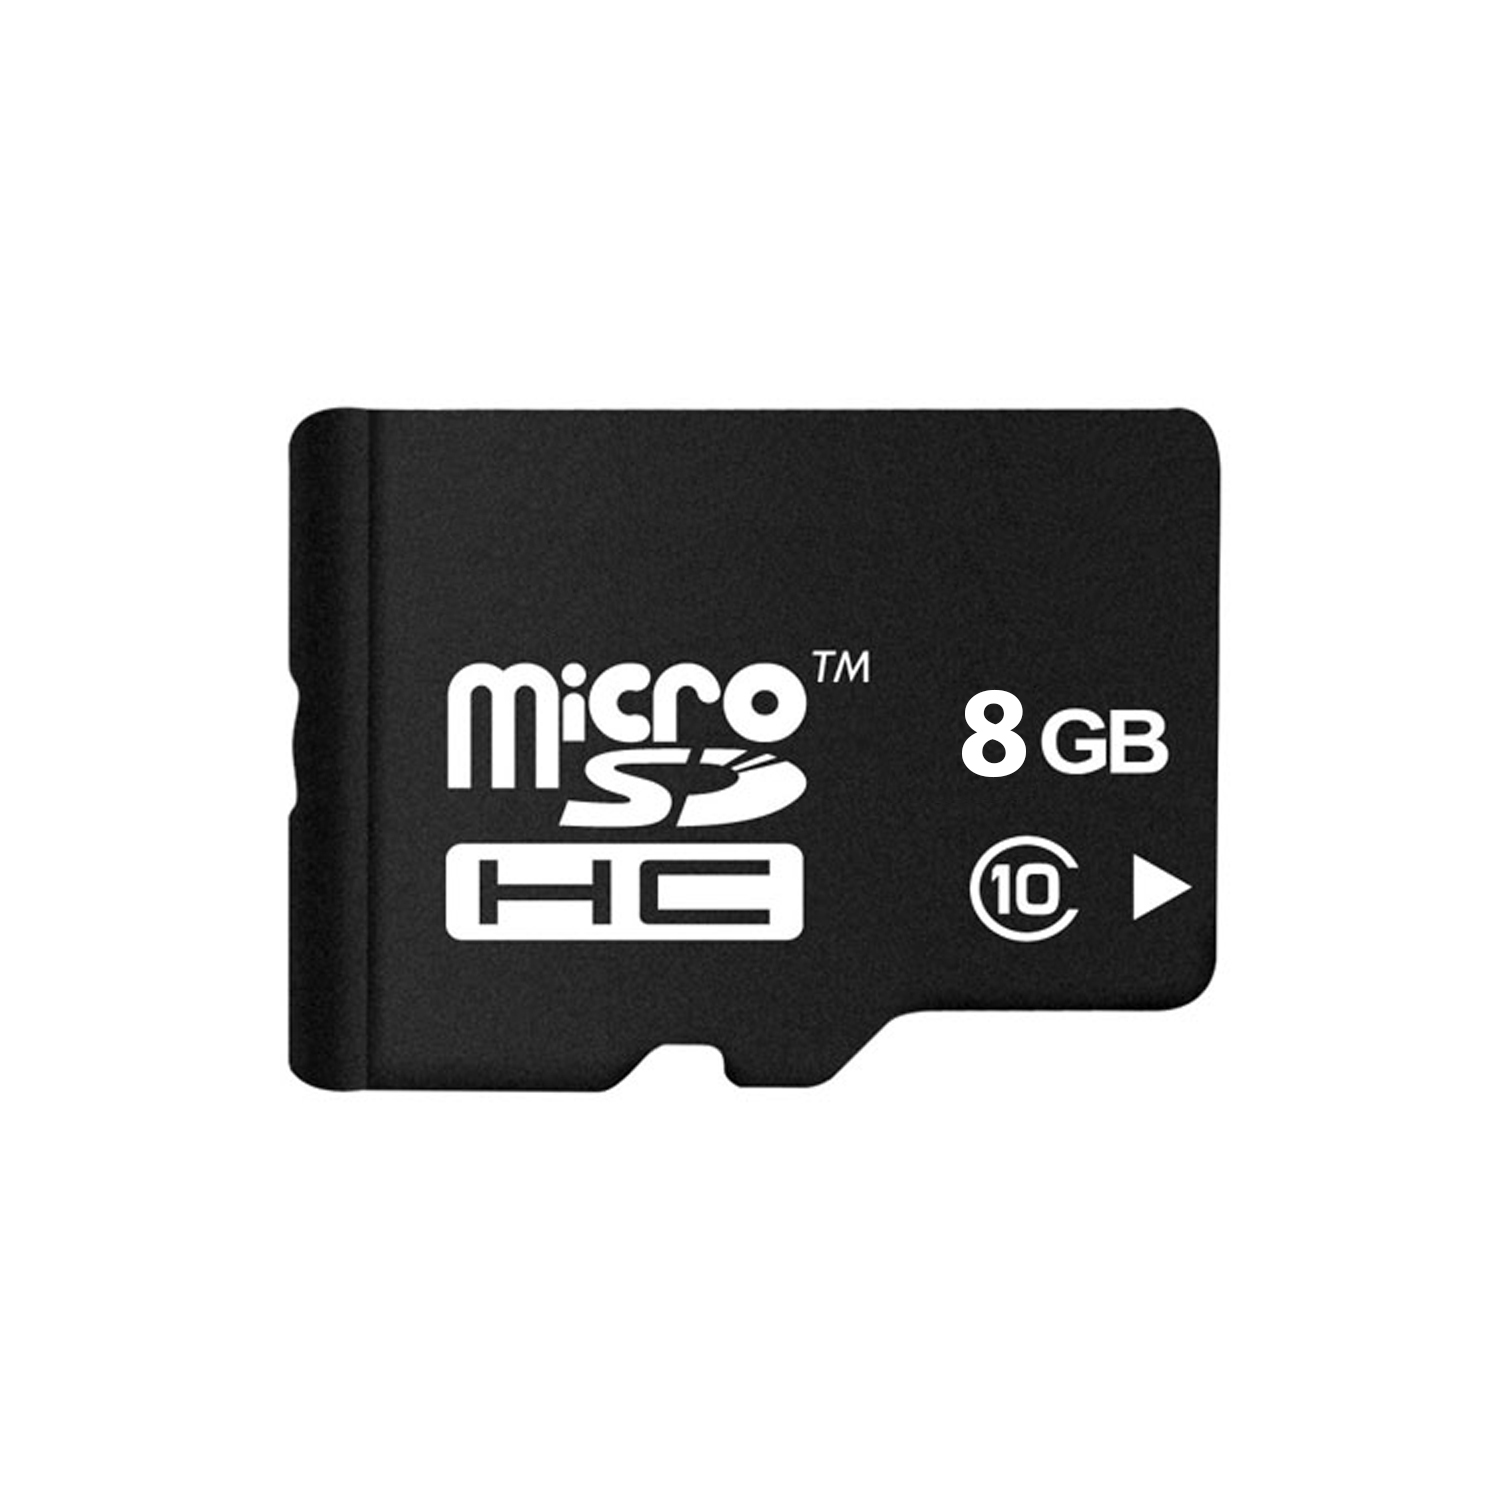 Pretec OEM MicroSDHC 8 GB class 10 PCMK08G